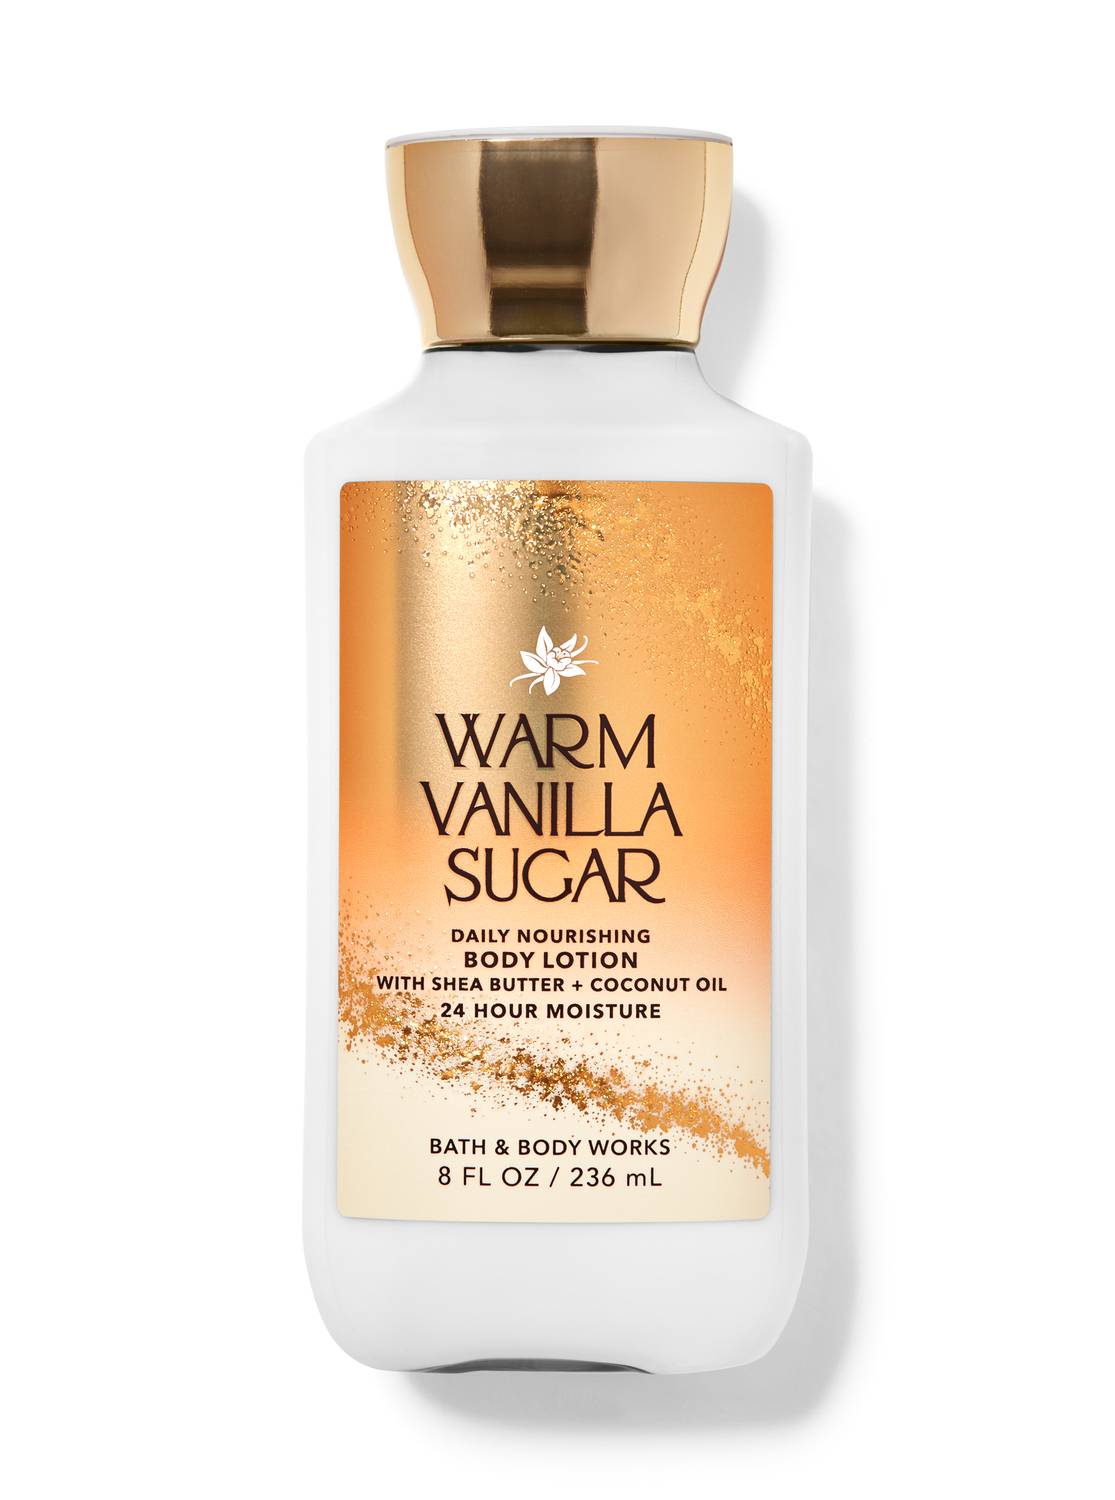 Bath & Body Works Warm Vanilla Sugar fragrance Mist Spray Gel wash + Lotion  Set